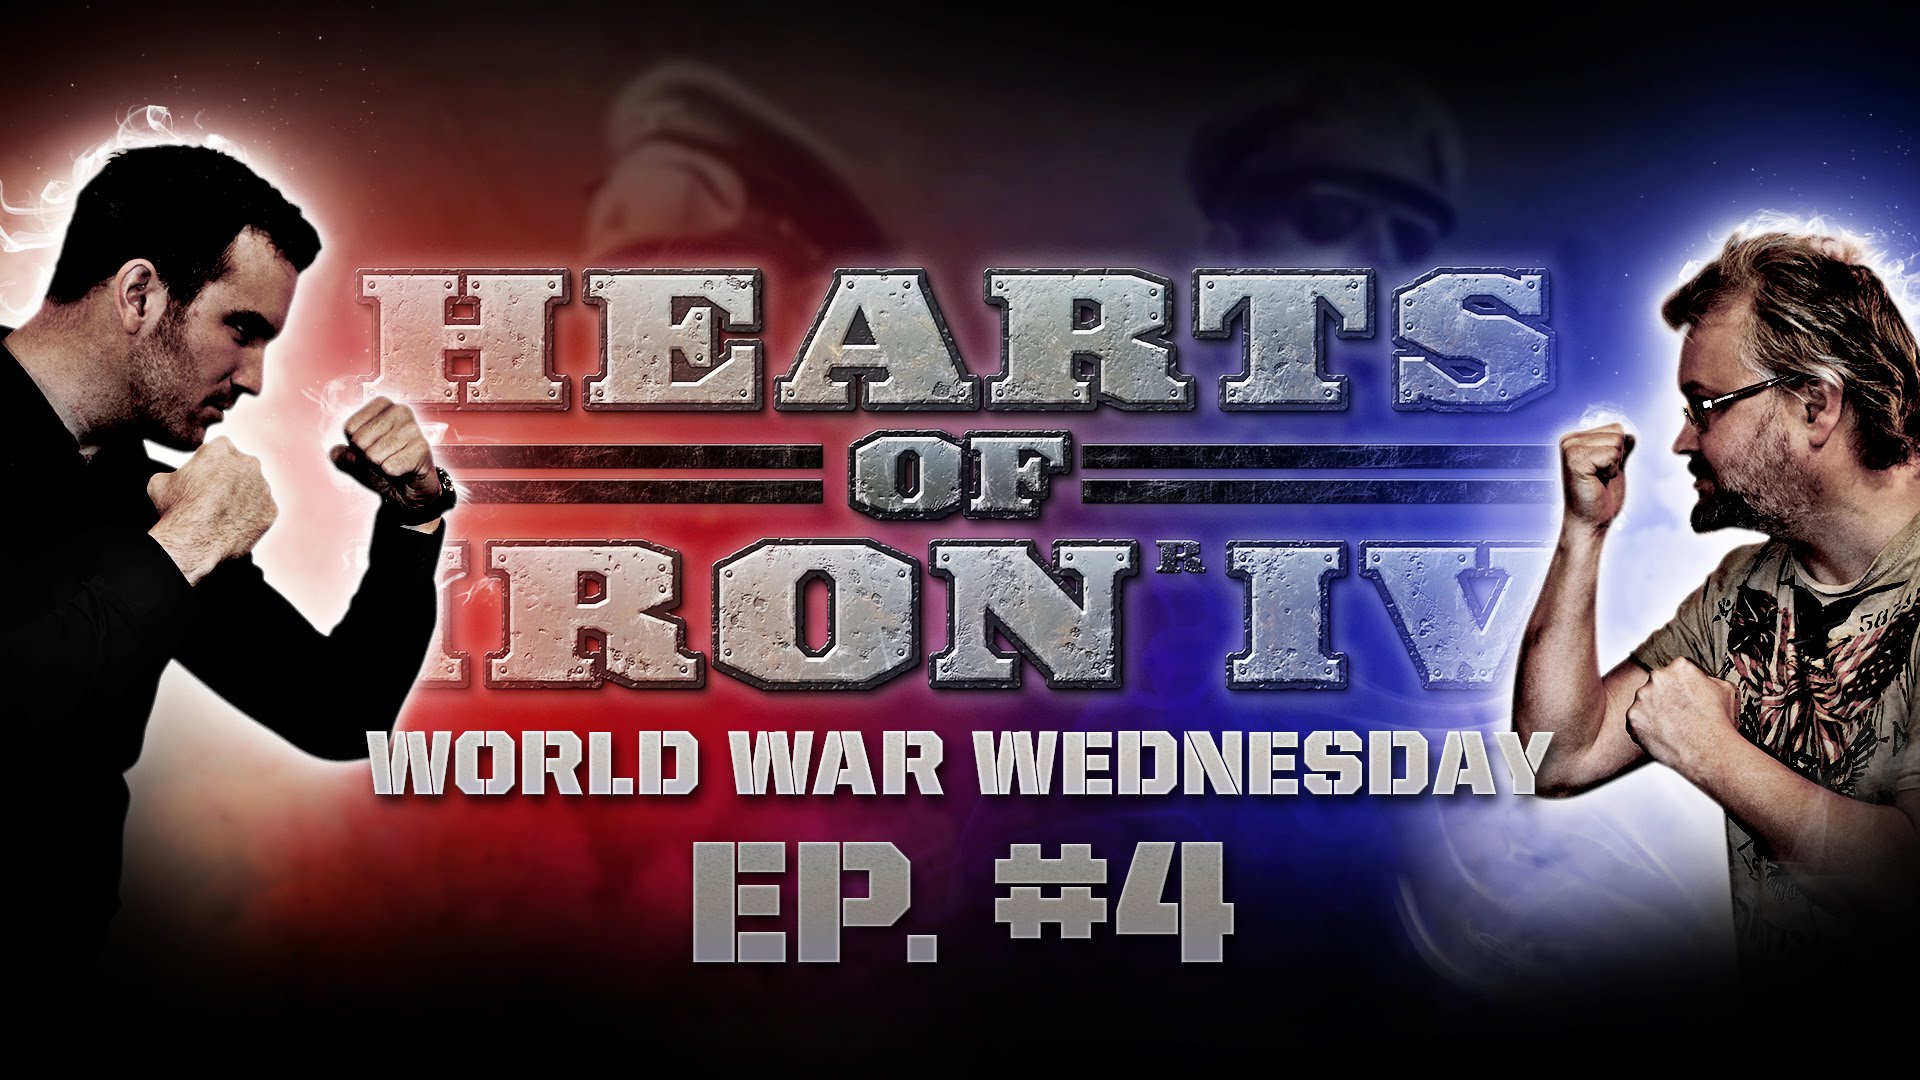 Hearts of Iron IV – “World War Wednesday” Part 4 – WAR!